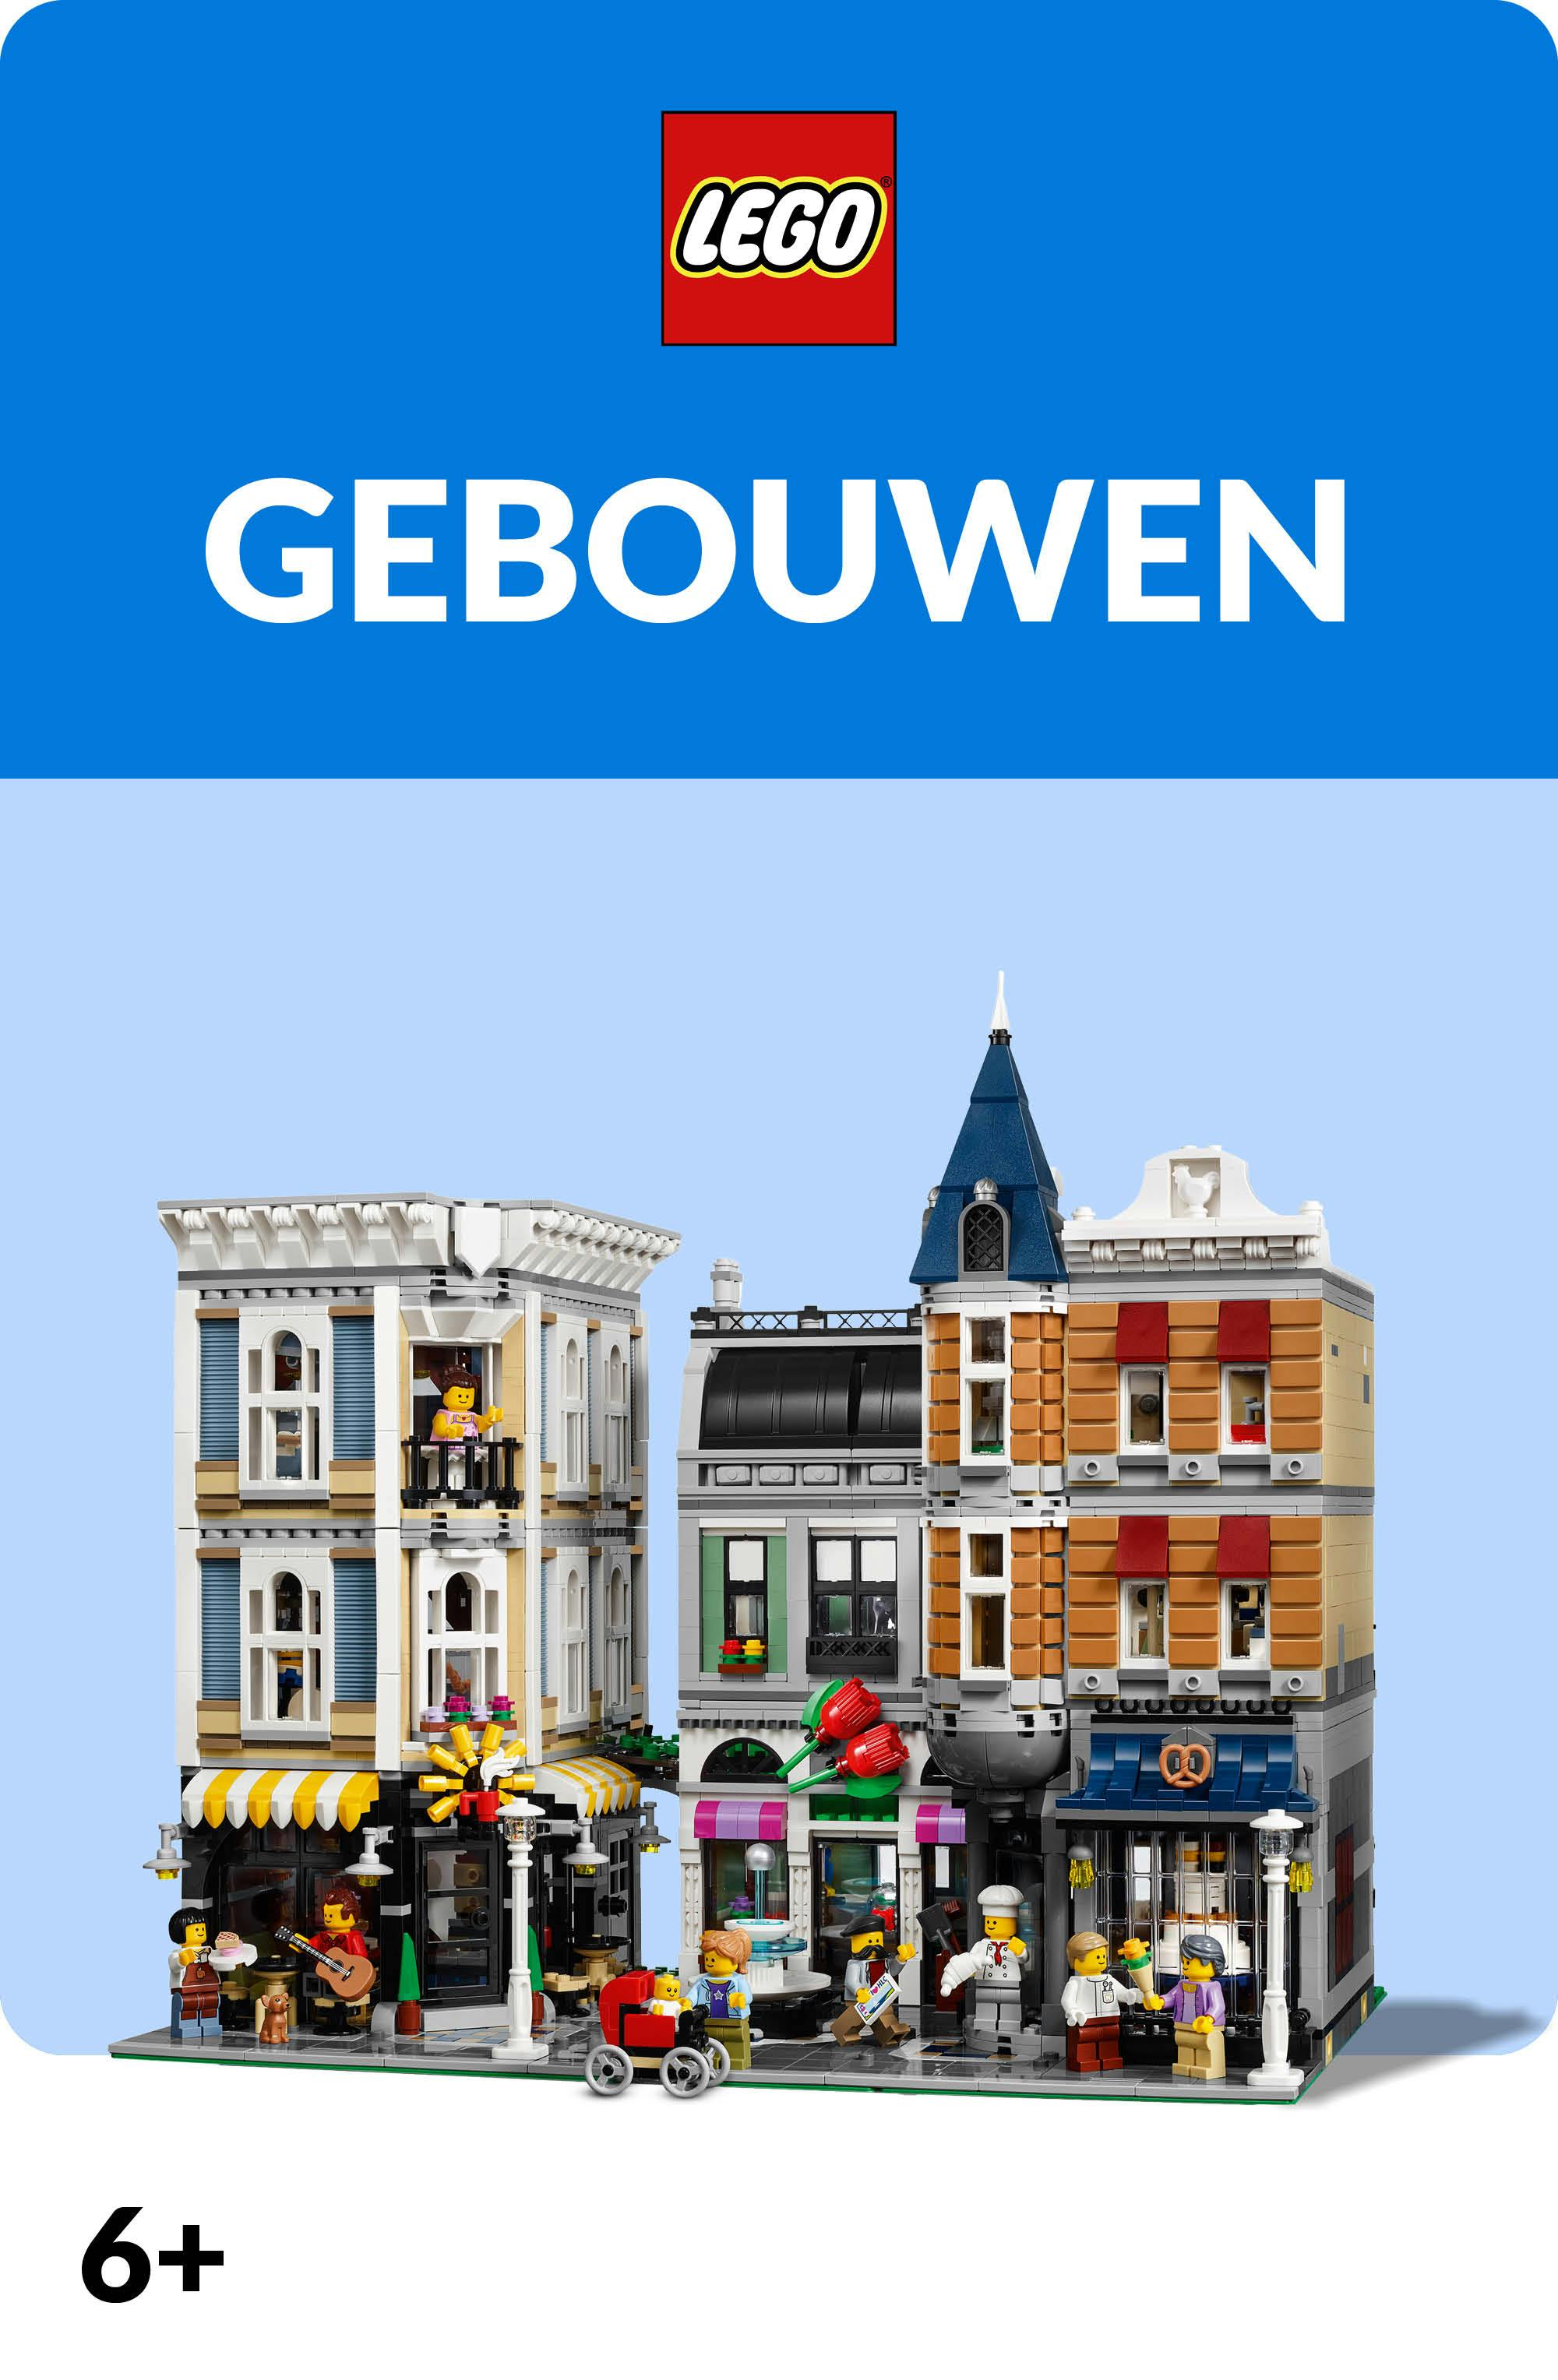 LEGO gebouwen